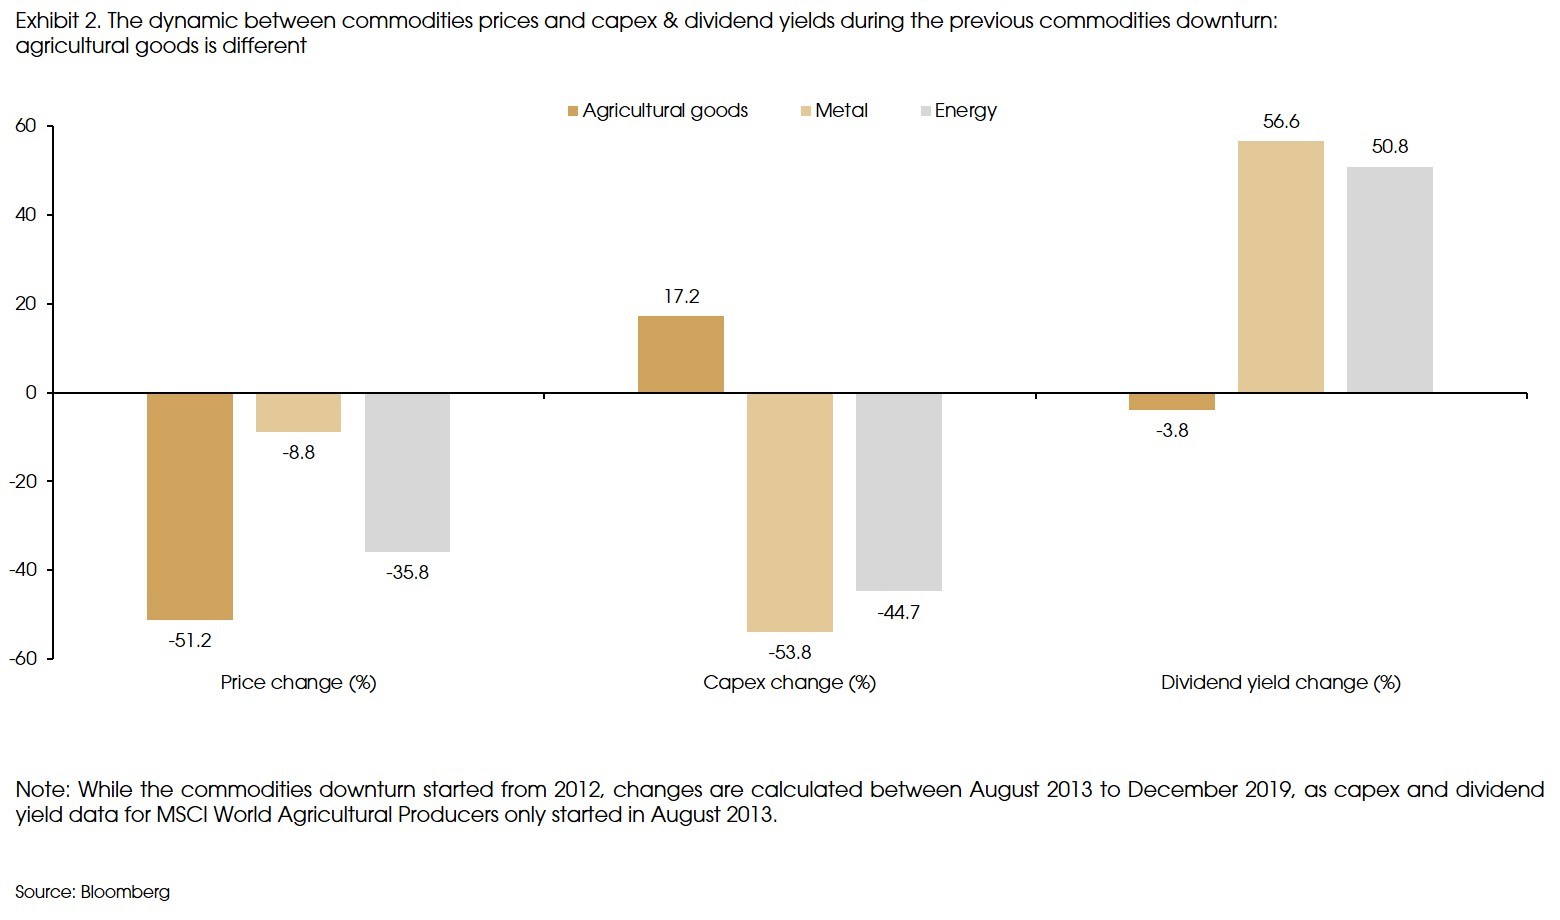 Exhibit 2 Dynamic between comodity prices